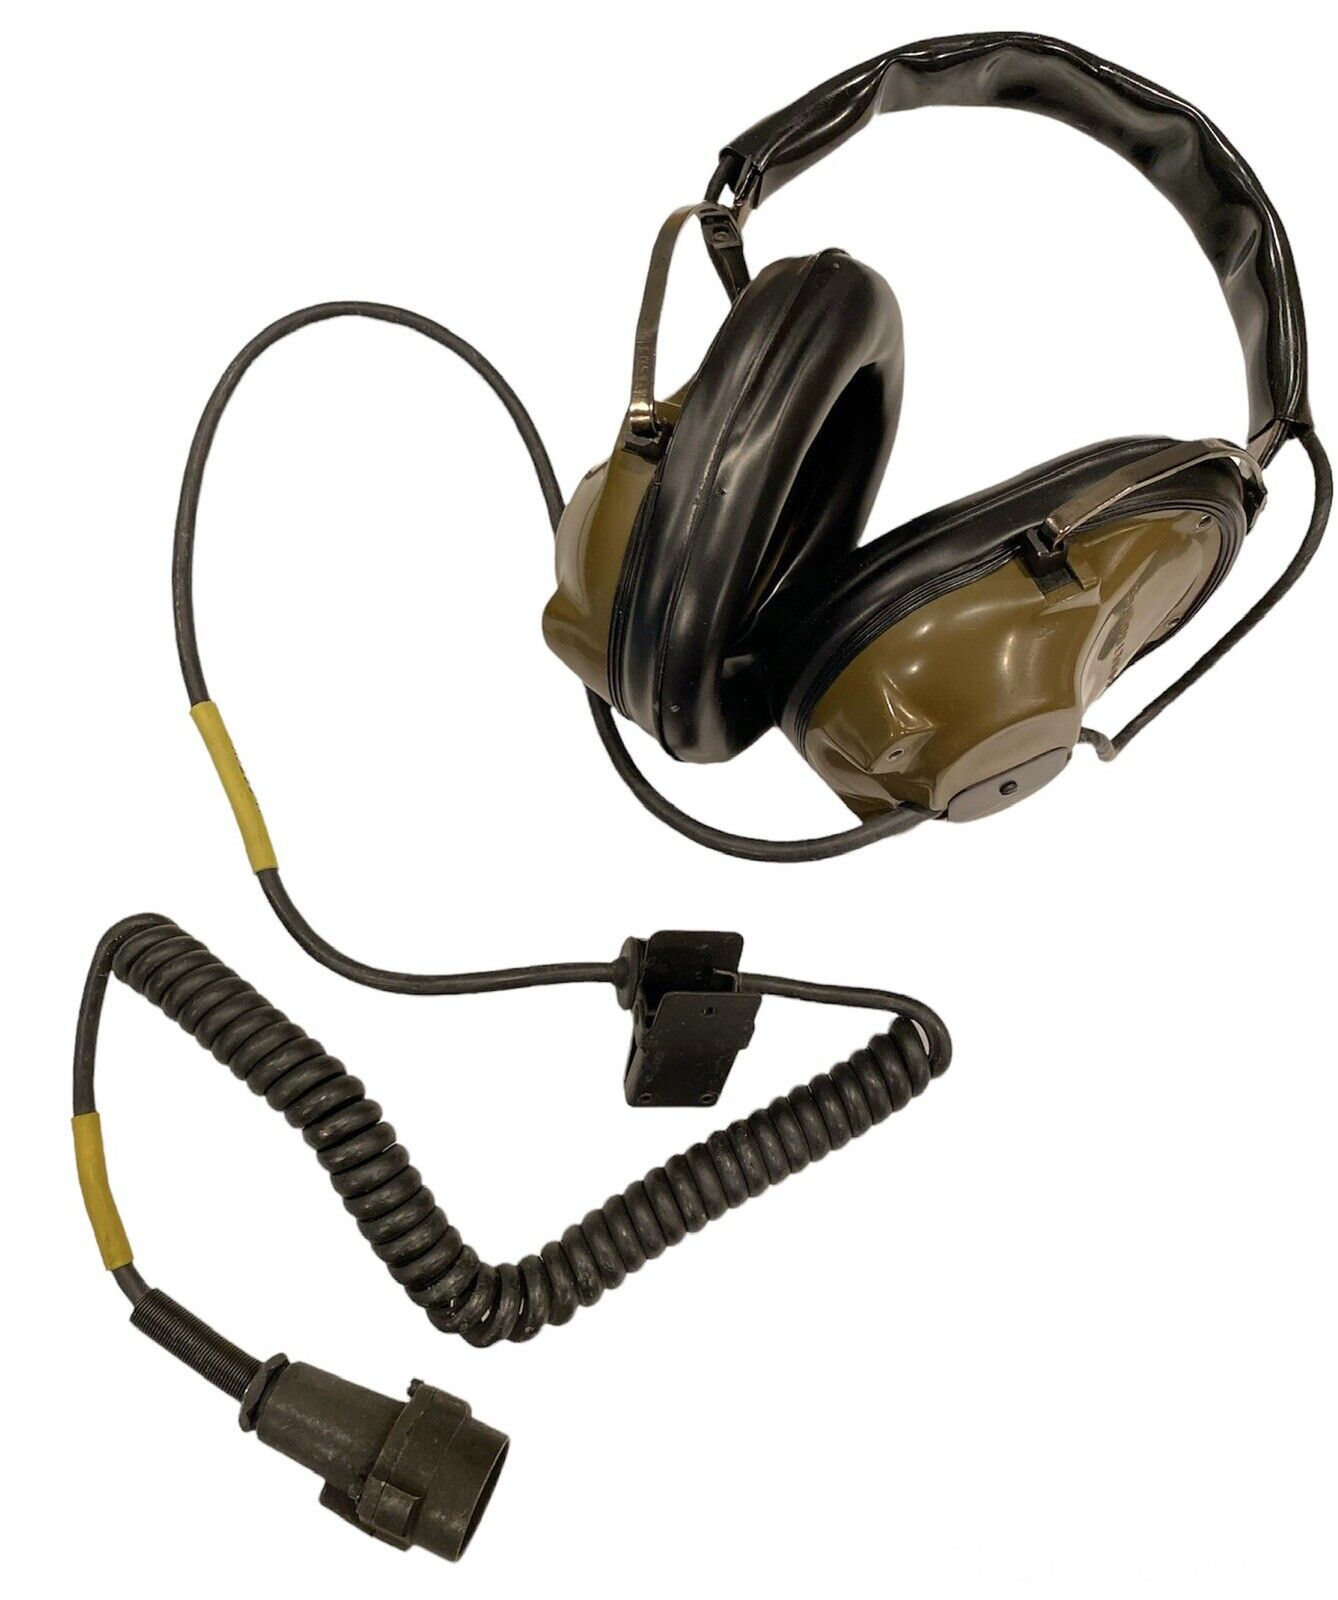 New Sonetronics Military Noise Cancelling Headset H-227/U USGI US Army USMC NOS